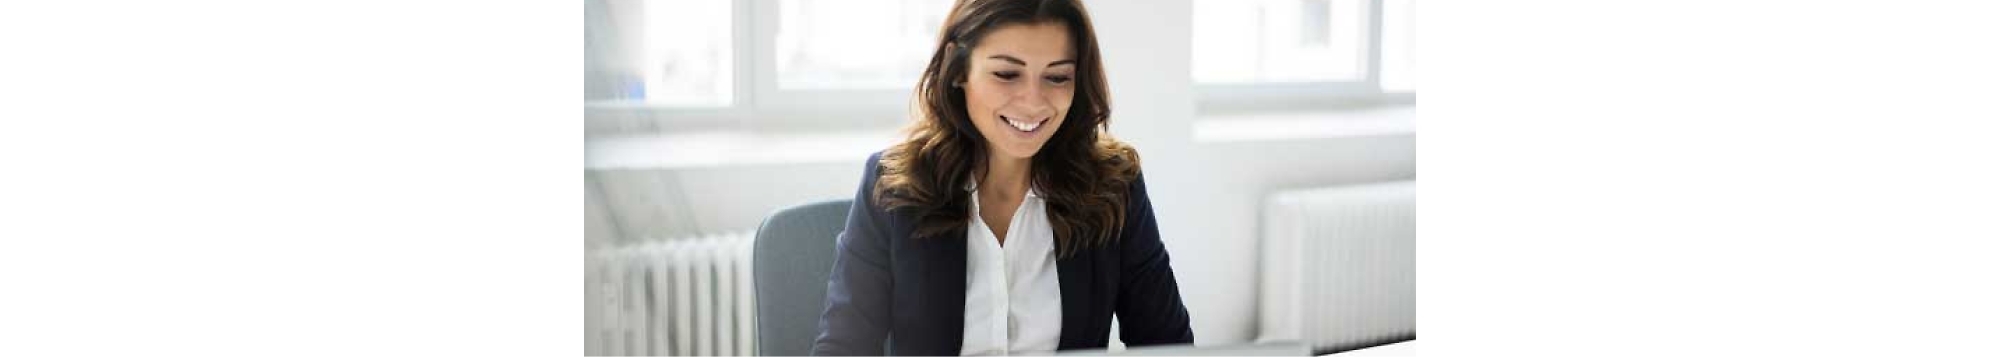 Femme dans un costume d’entreprise assis à un bureau avec un ordinateur portable.